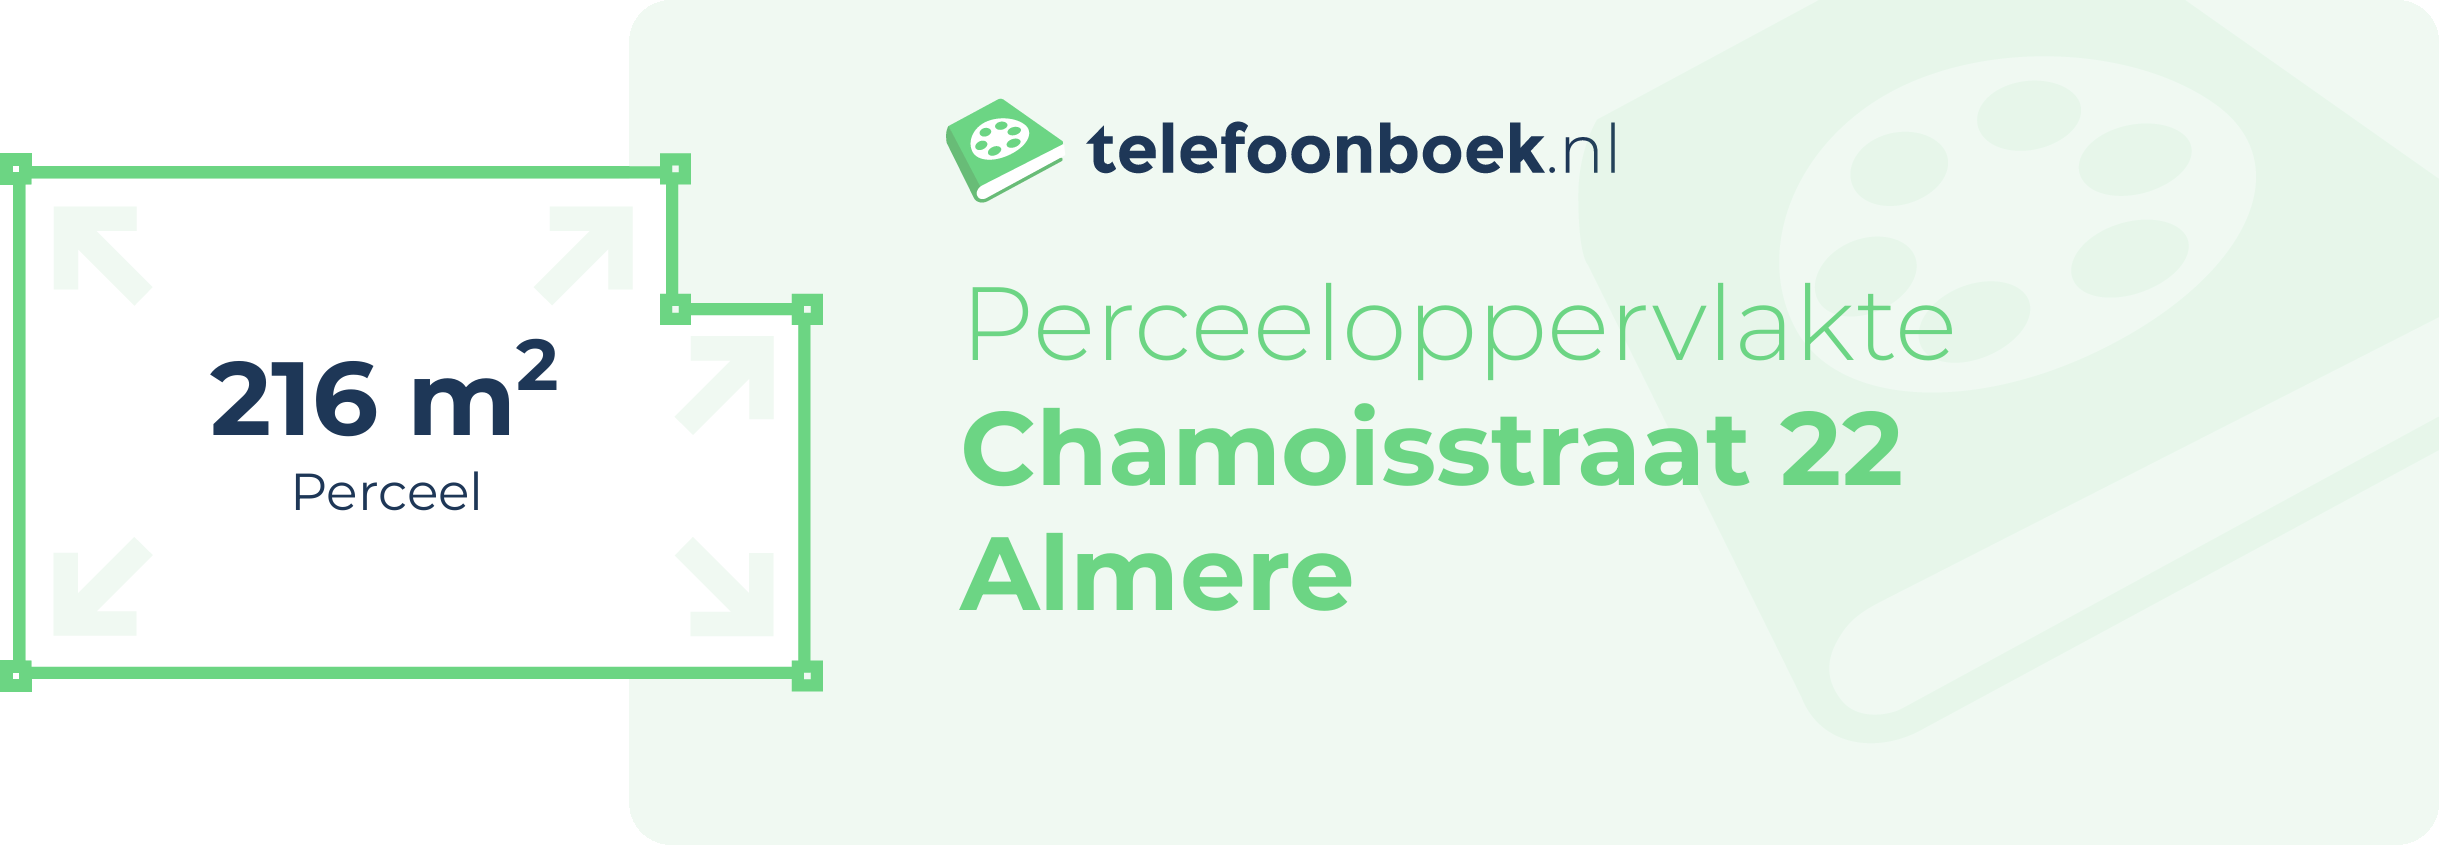 Perceeloppervlakte Chamoisstraat 22 Almere